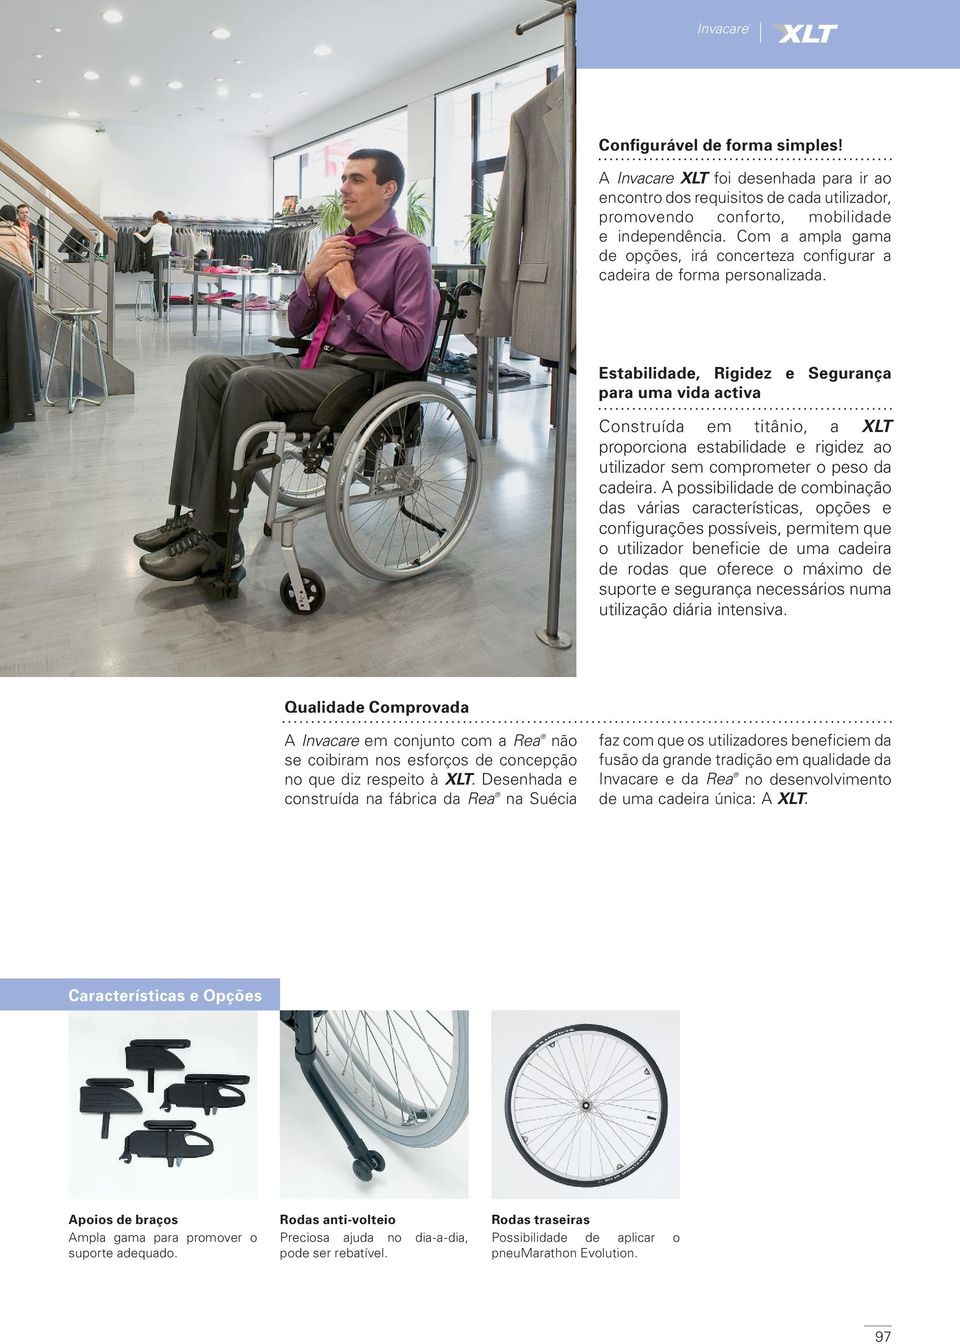 Estabilidade, Rigidez e Segurança para uma vida activa Construída em titânio, a XLT proporciona estabilidade e rigidez ao utilizador sem comprometer o peso da cadeira.